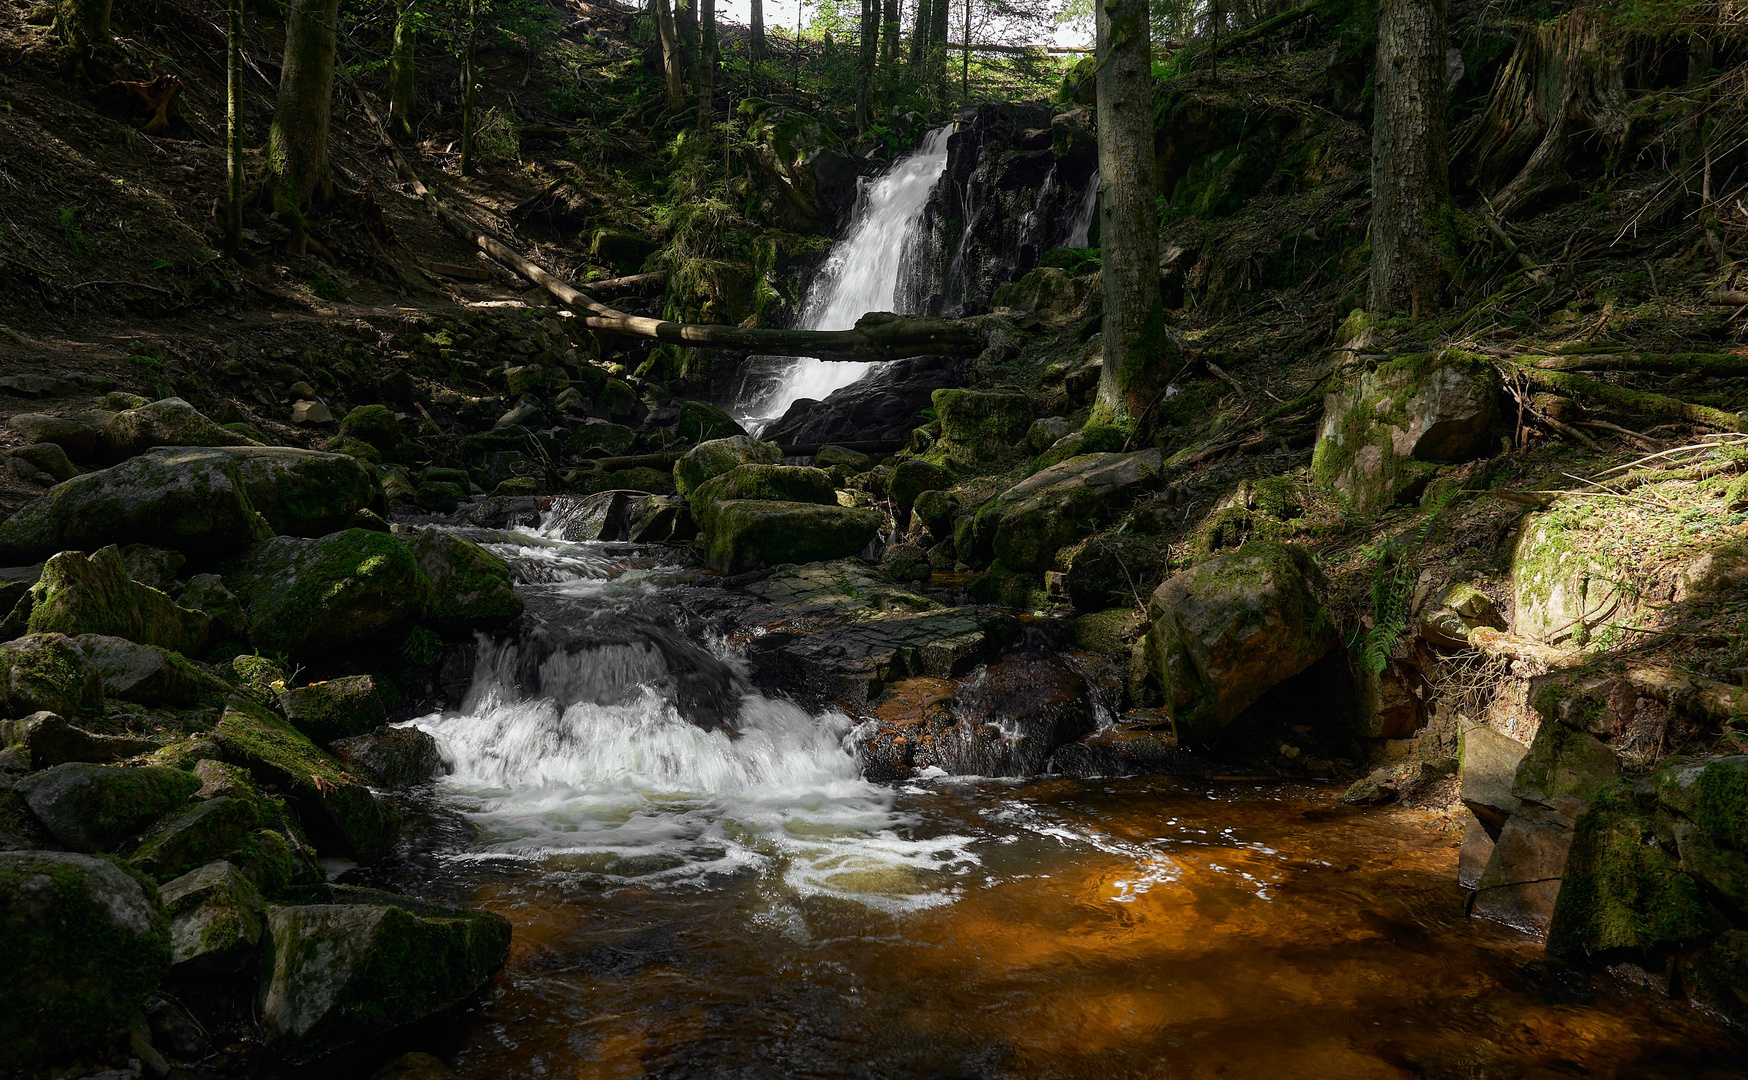 Wasserfall in der Winbergschlucht